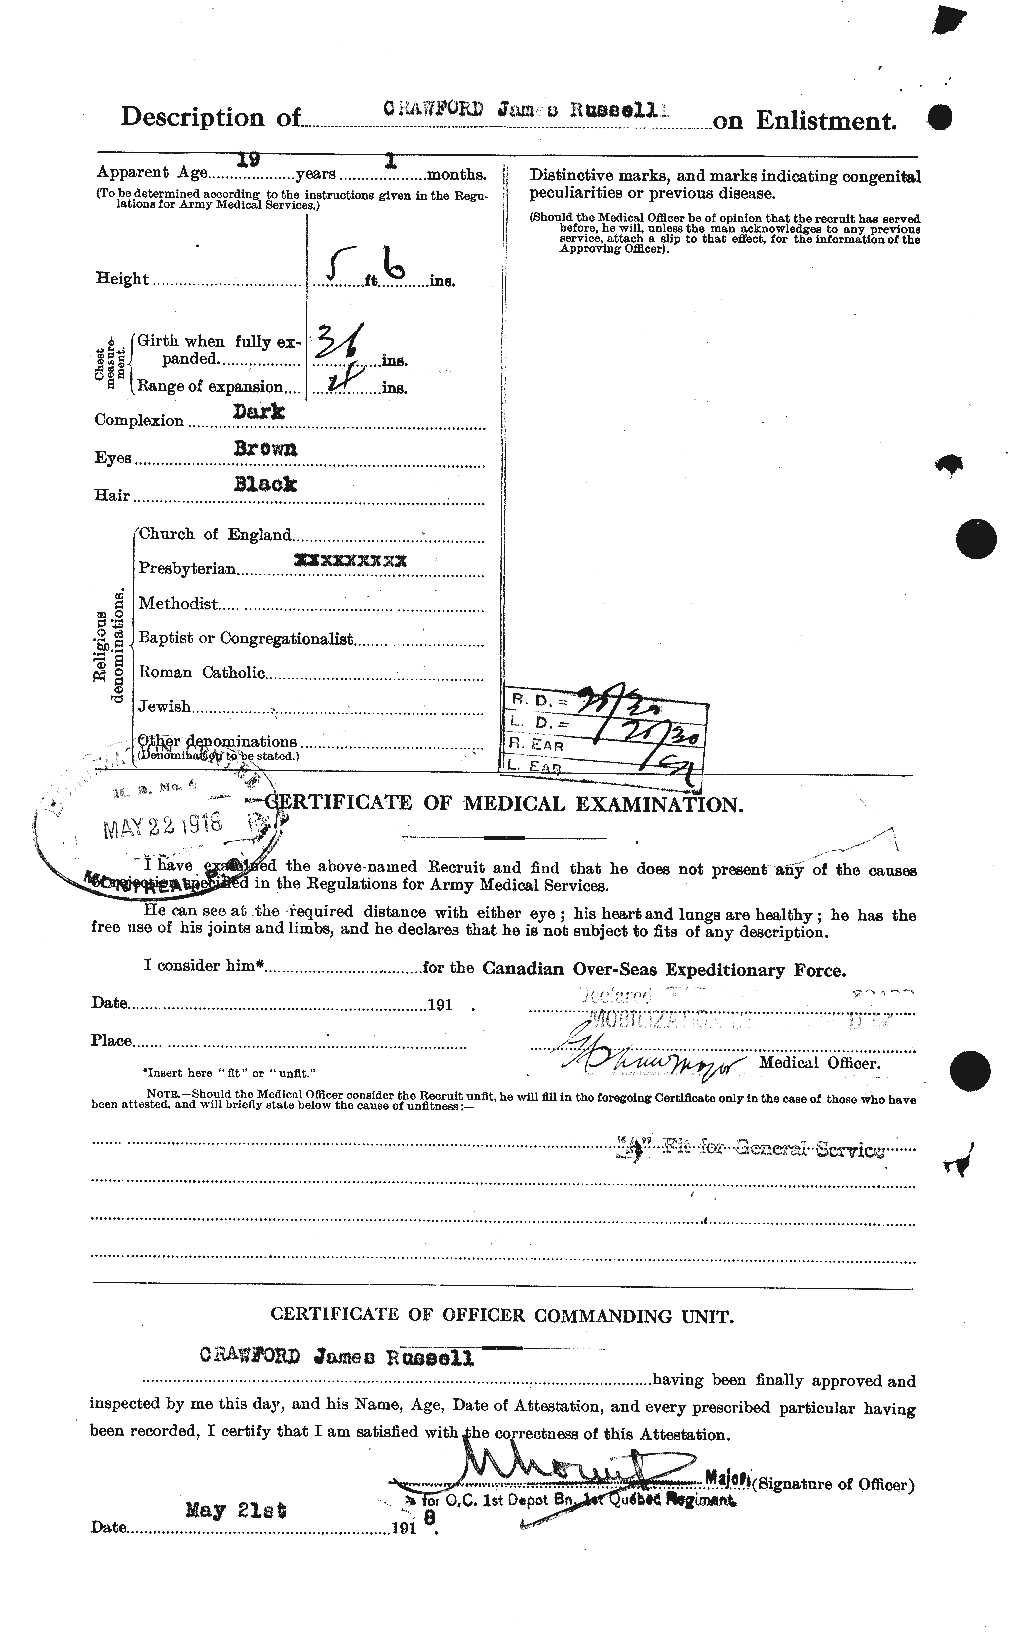 Dossiers du Personnel de la Première Guerre mondiale - CEC 062470b